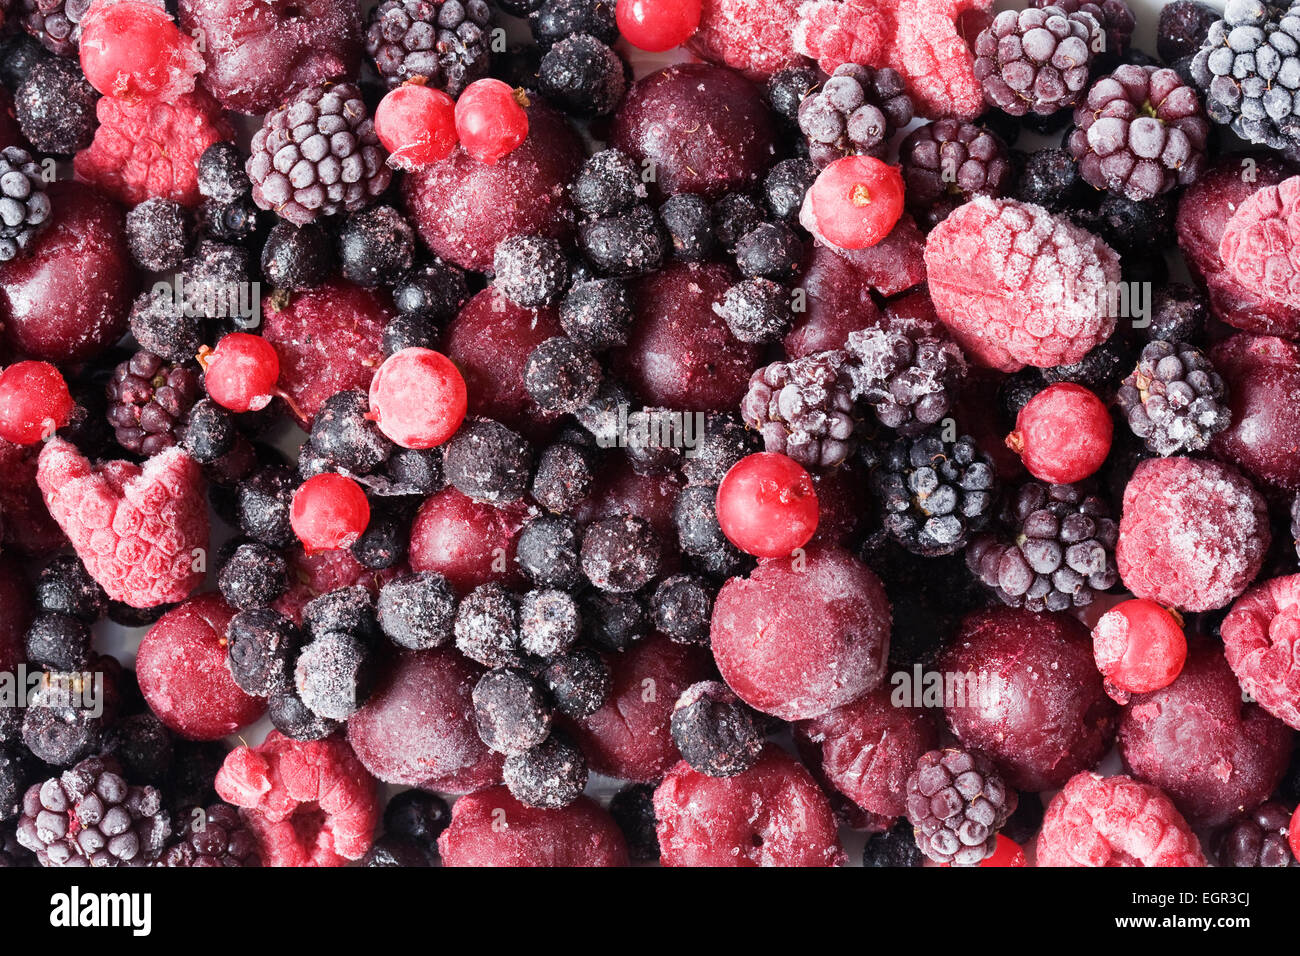 Frozen mixed berries. Stock Photo